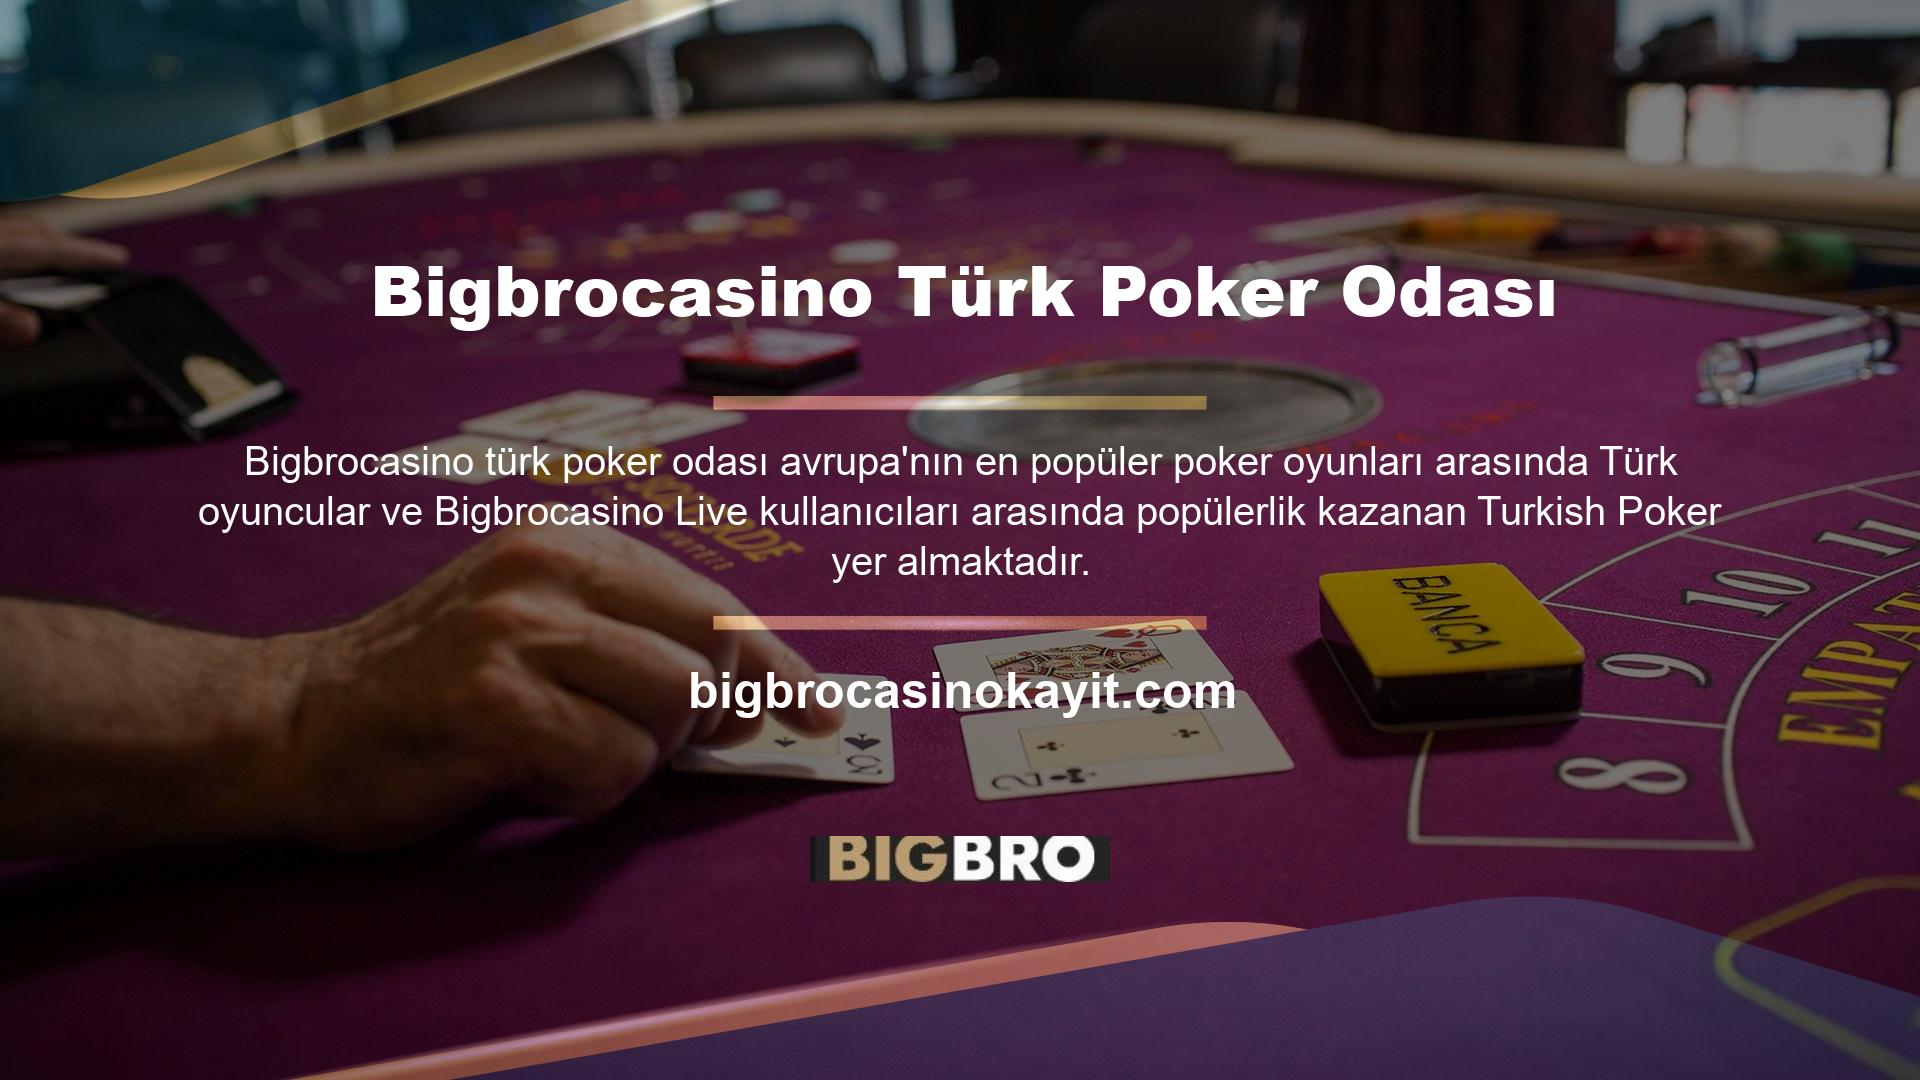 Tarihi Bigbrocasino Türk poker odasını geri getirmek ve geleneksel Türk slot kültürünü korumak için bu web sitesine kendi adını taşıyan kart oyunlarını içeren bir oyun eklendi